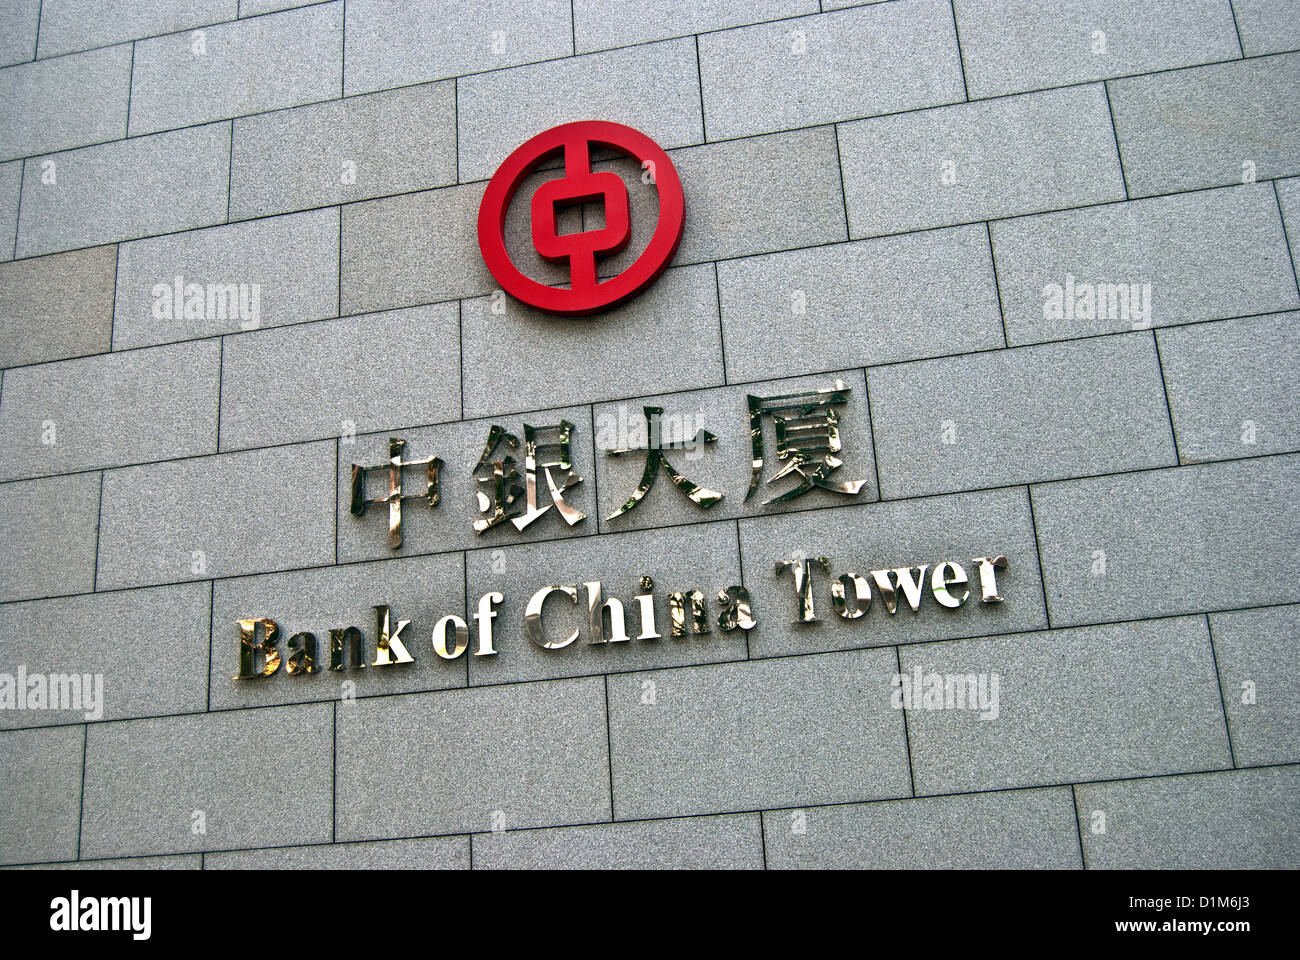 Bank of China Tower, sign and logo, close-up, Hong Kong Stock Photo